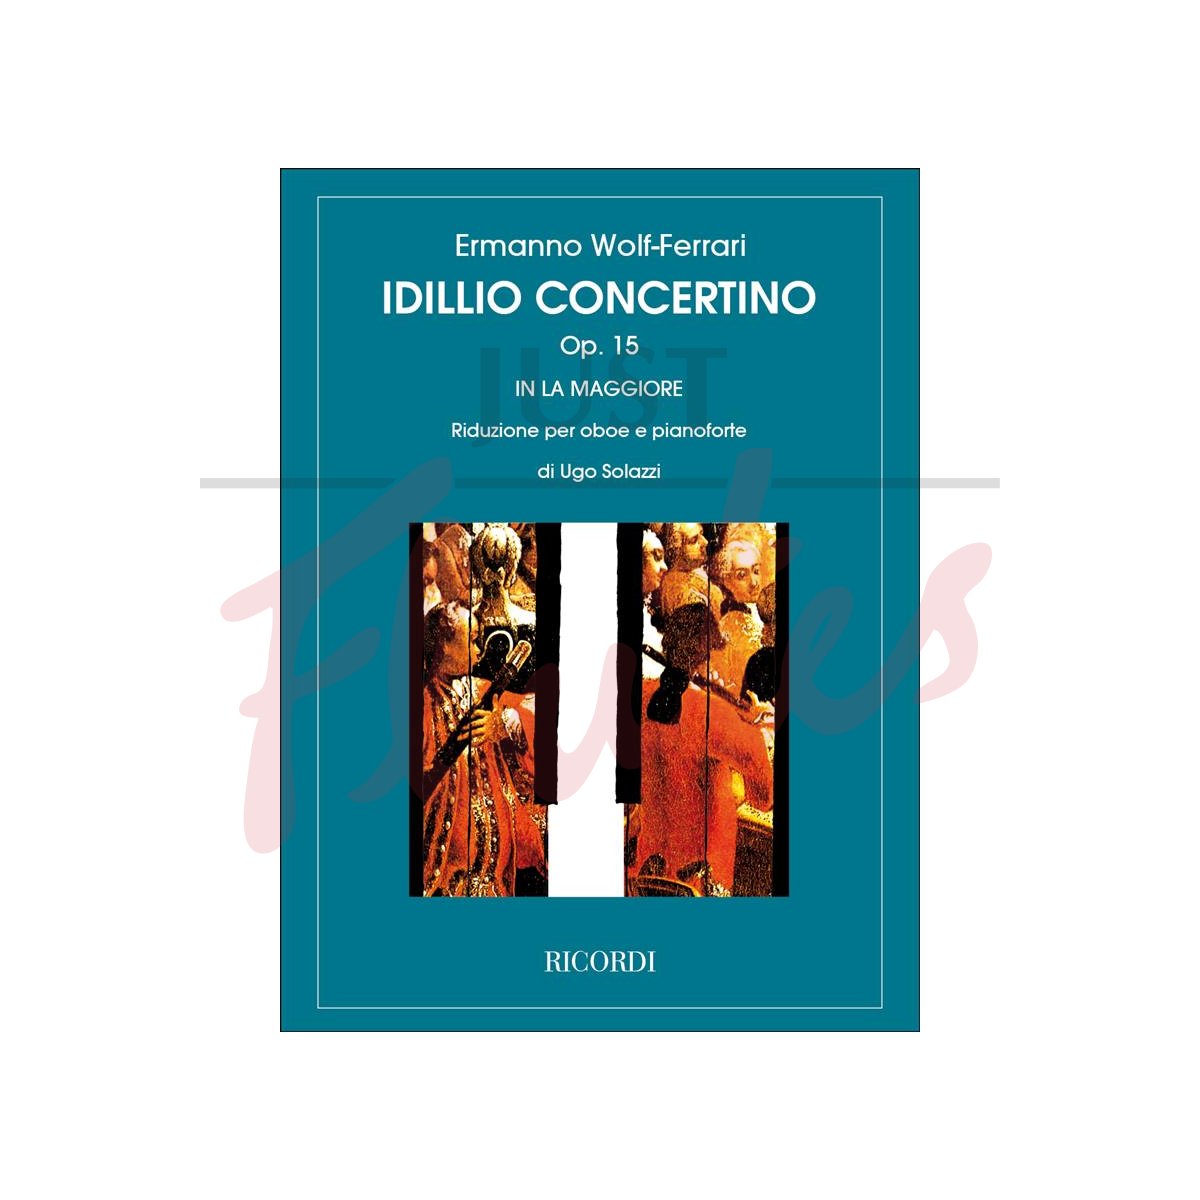 Idillio-Concertino in A major for Oboe and Piano